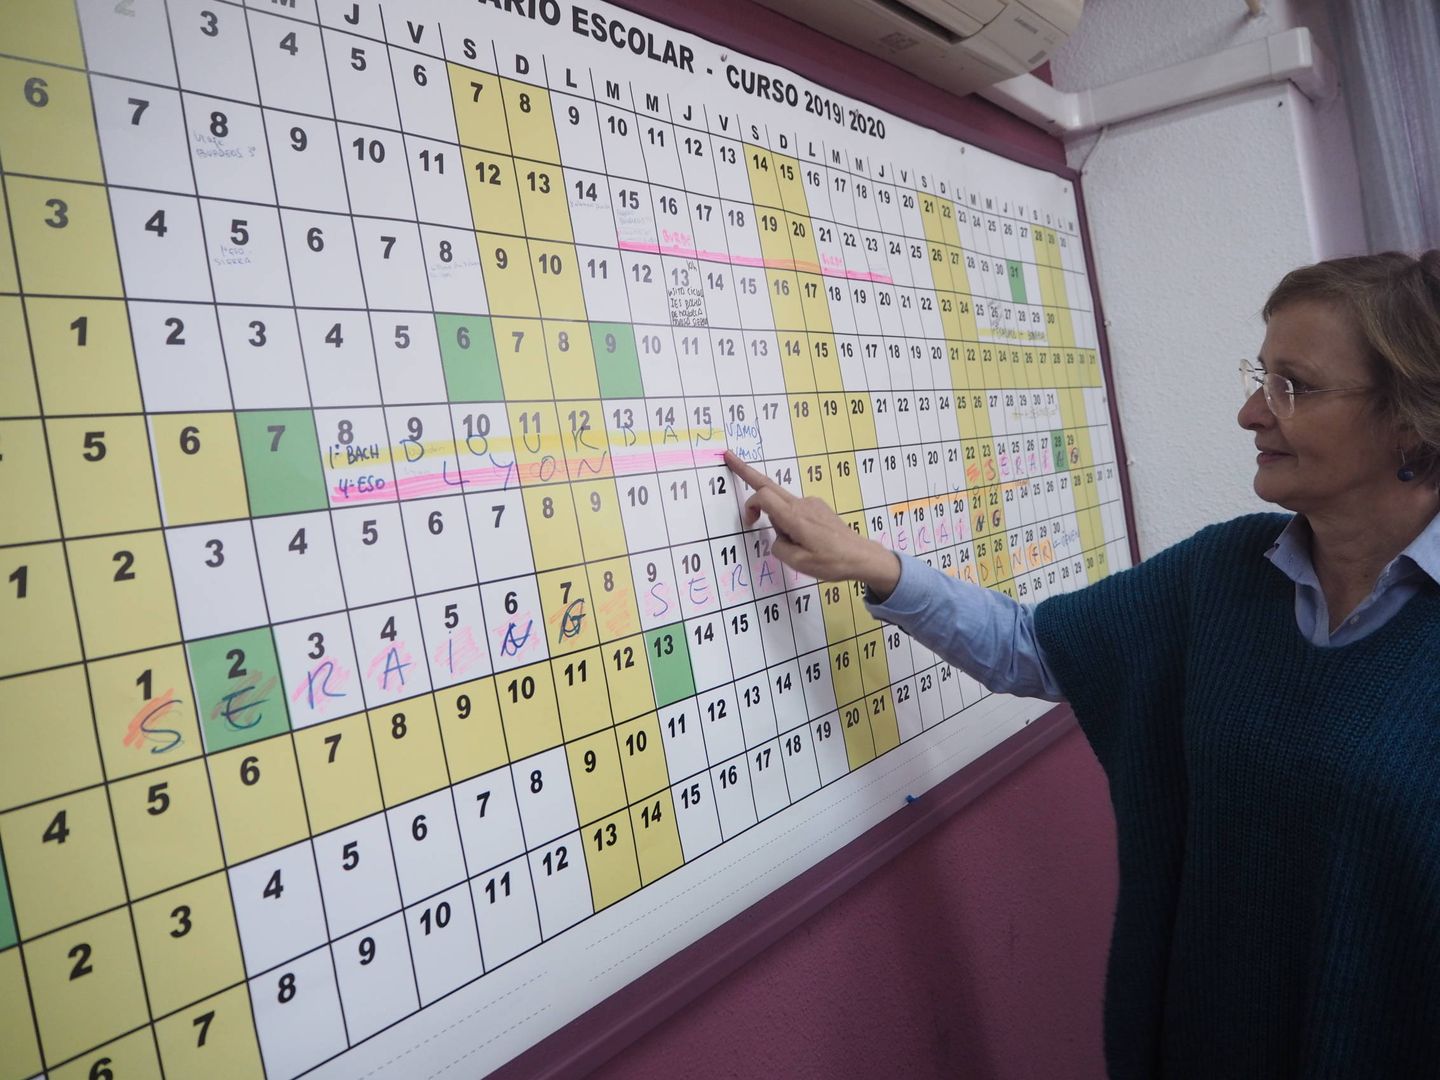 González, frente al calendario de su despacho, donde se detallan las actividades complementarias y extraescolares del Juan de Mairena. (Héctor G. Barnés)